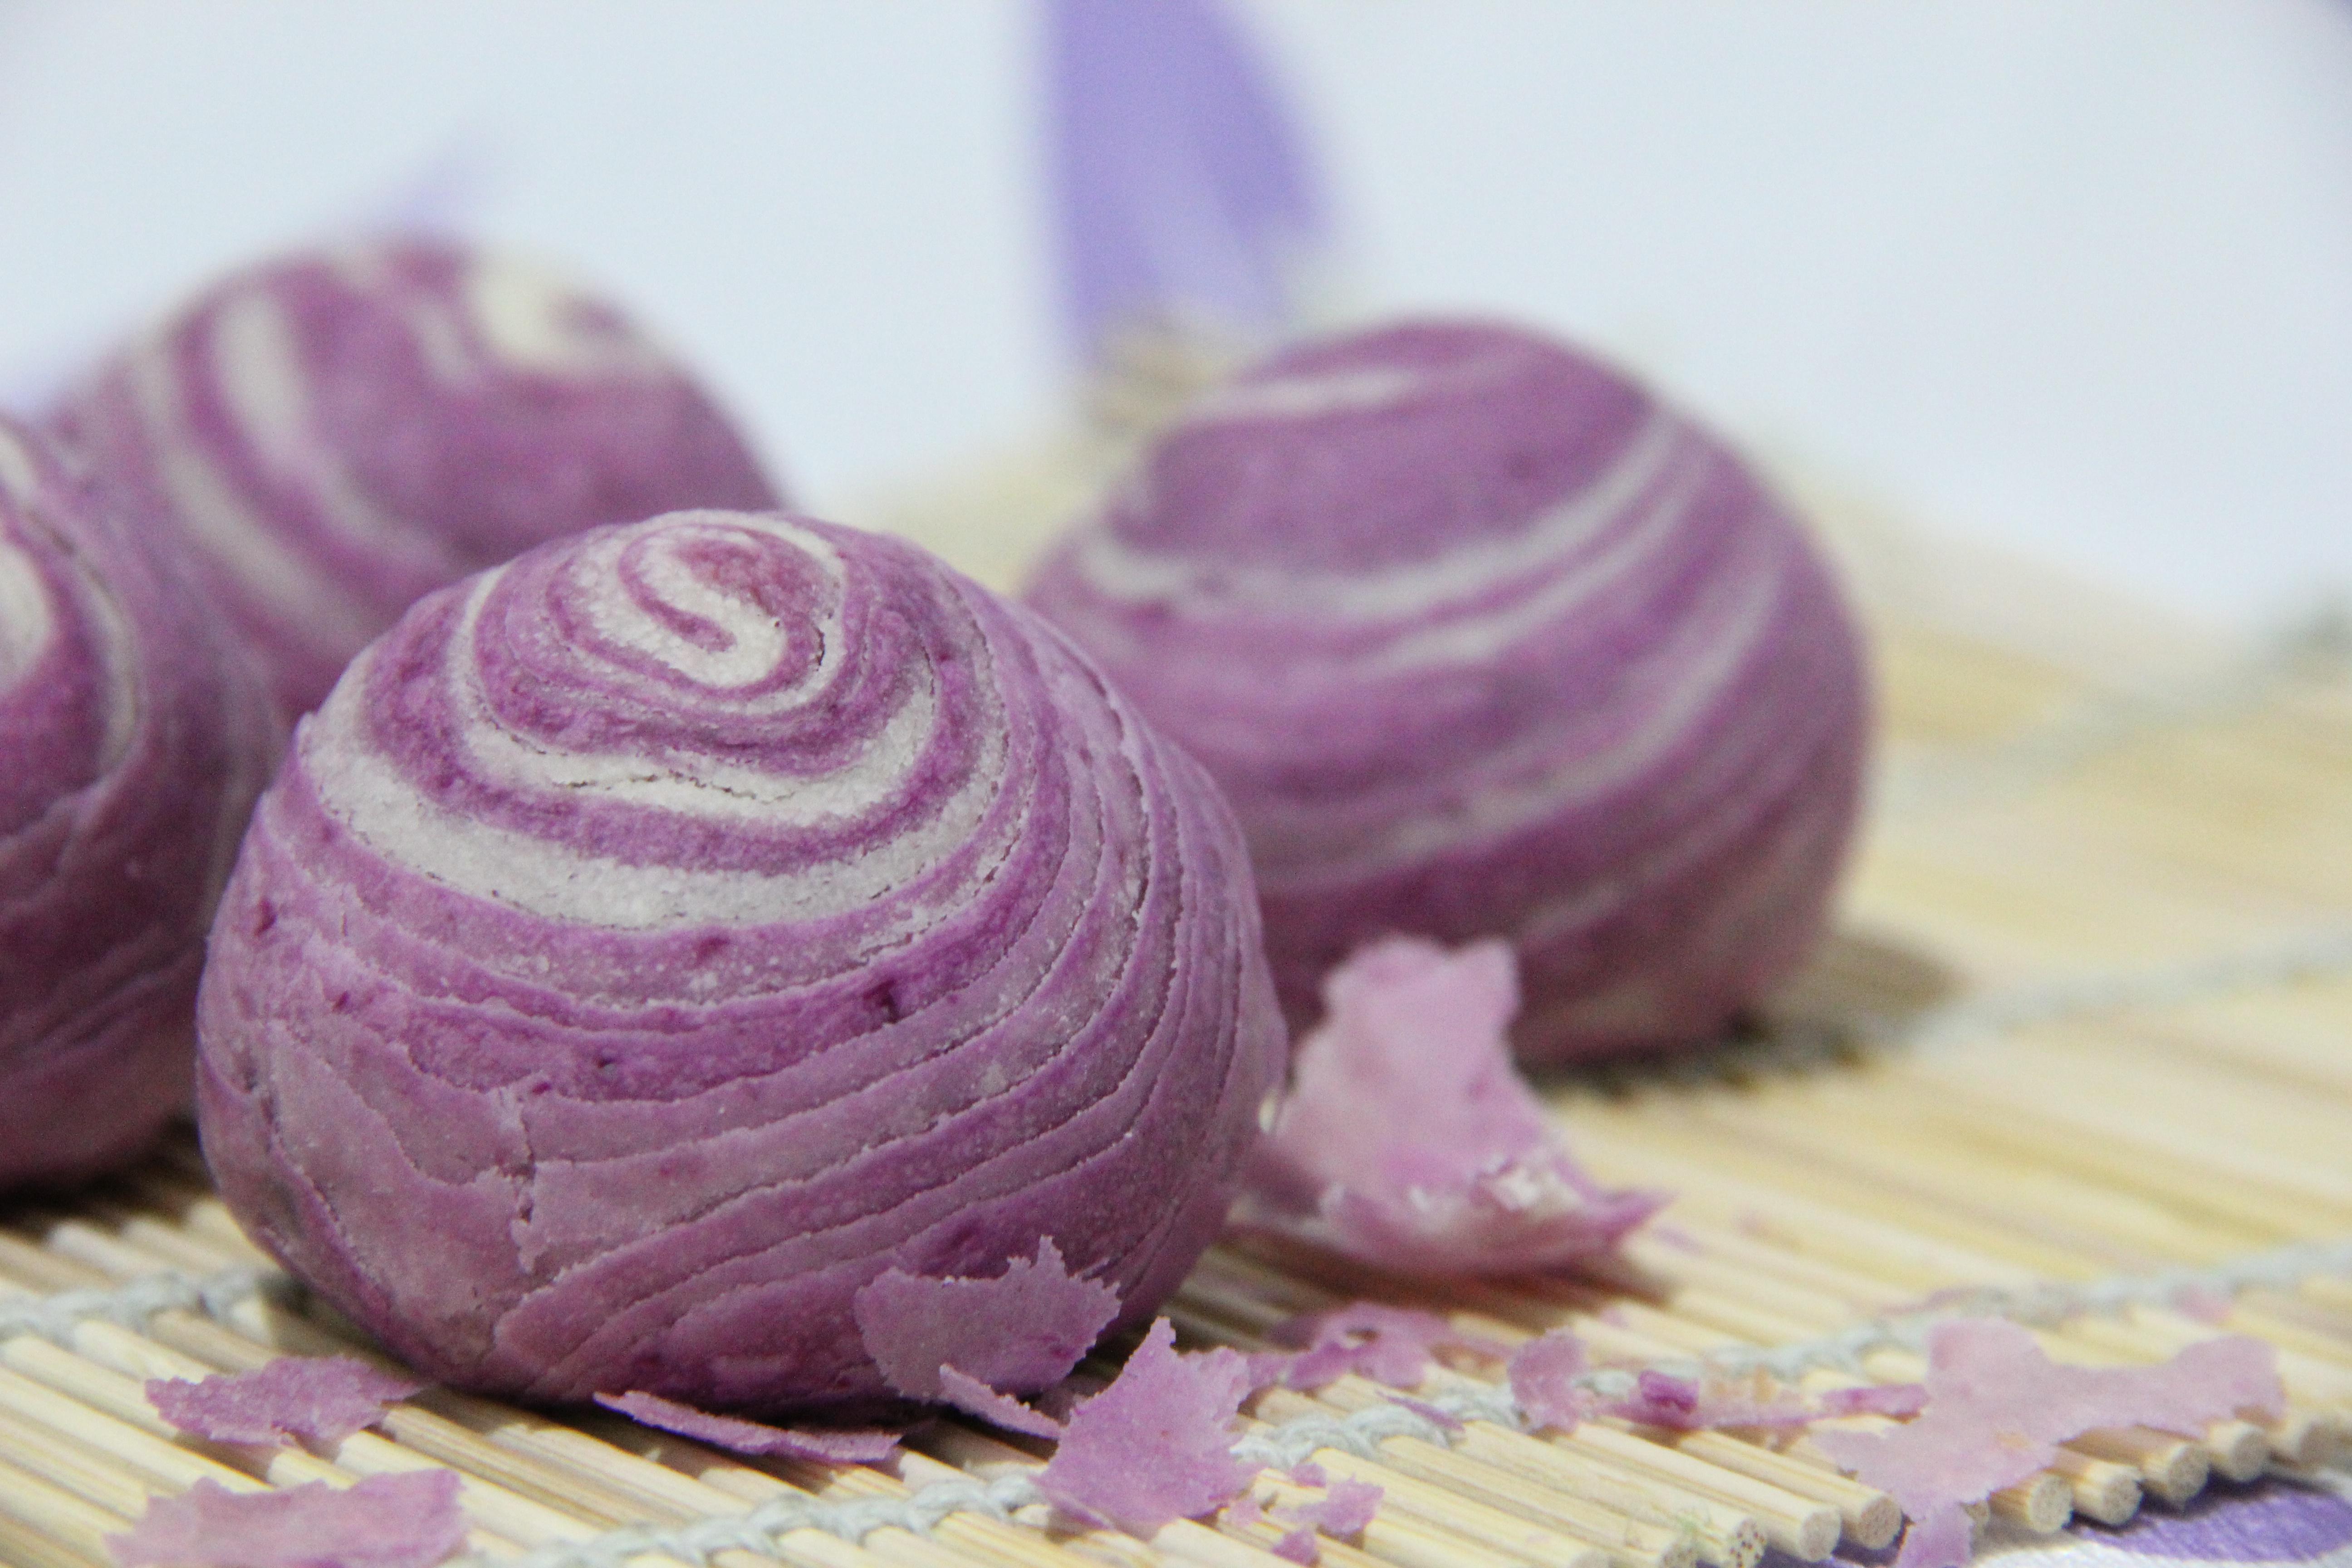 紫薯酥的做法